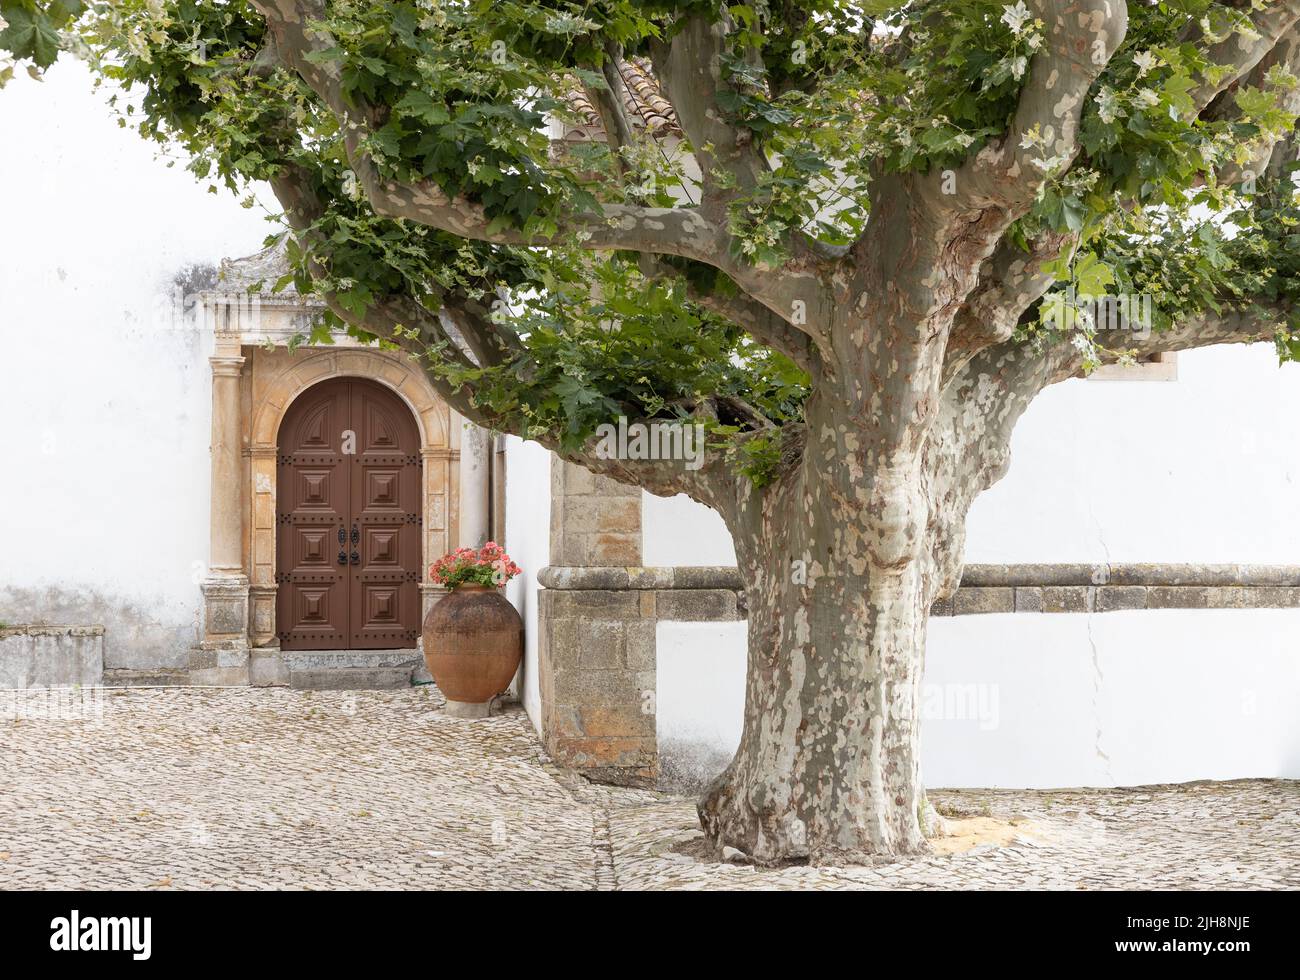 La ciudad de Óbidos, Portugal: Vista detallada de la iglesia de Santa María con un árbol enorme Foto de stock